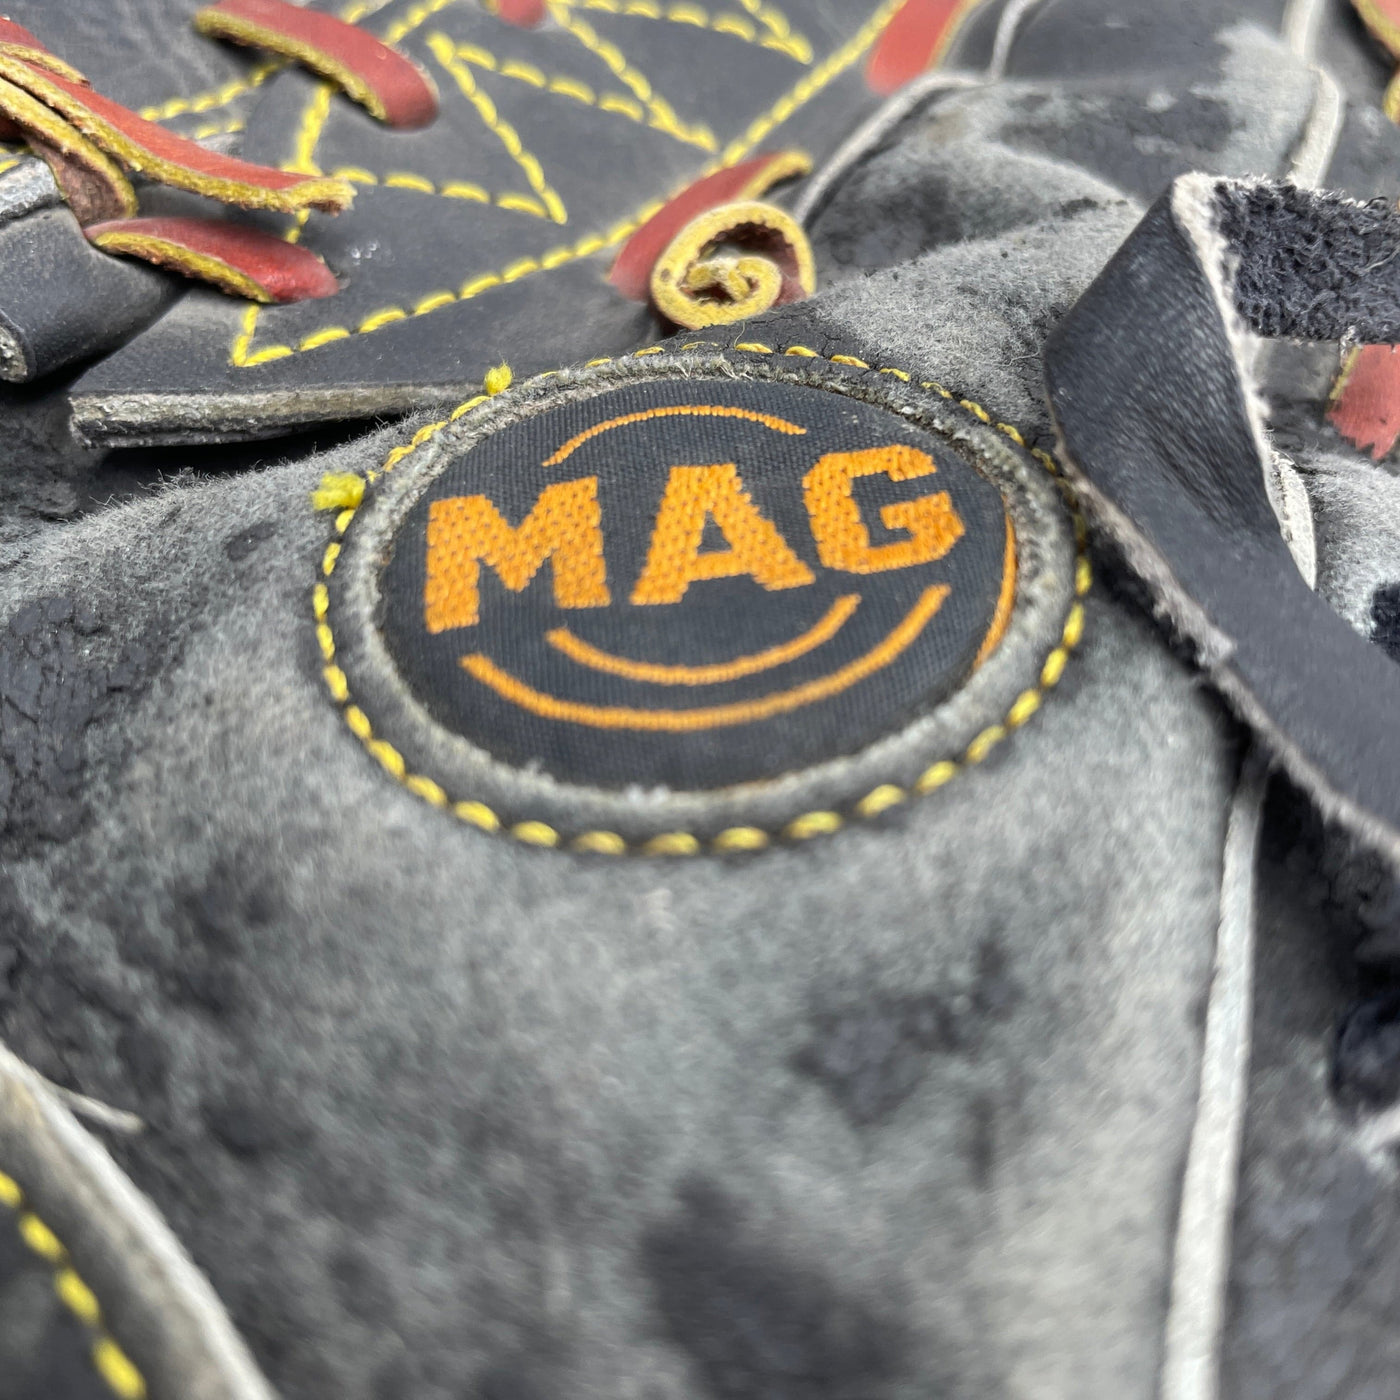 MAG Baseball Glove - G018